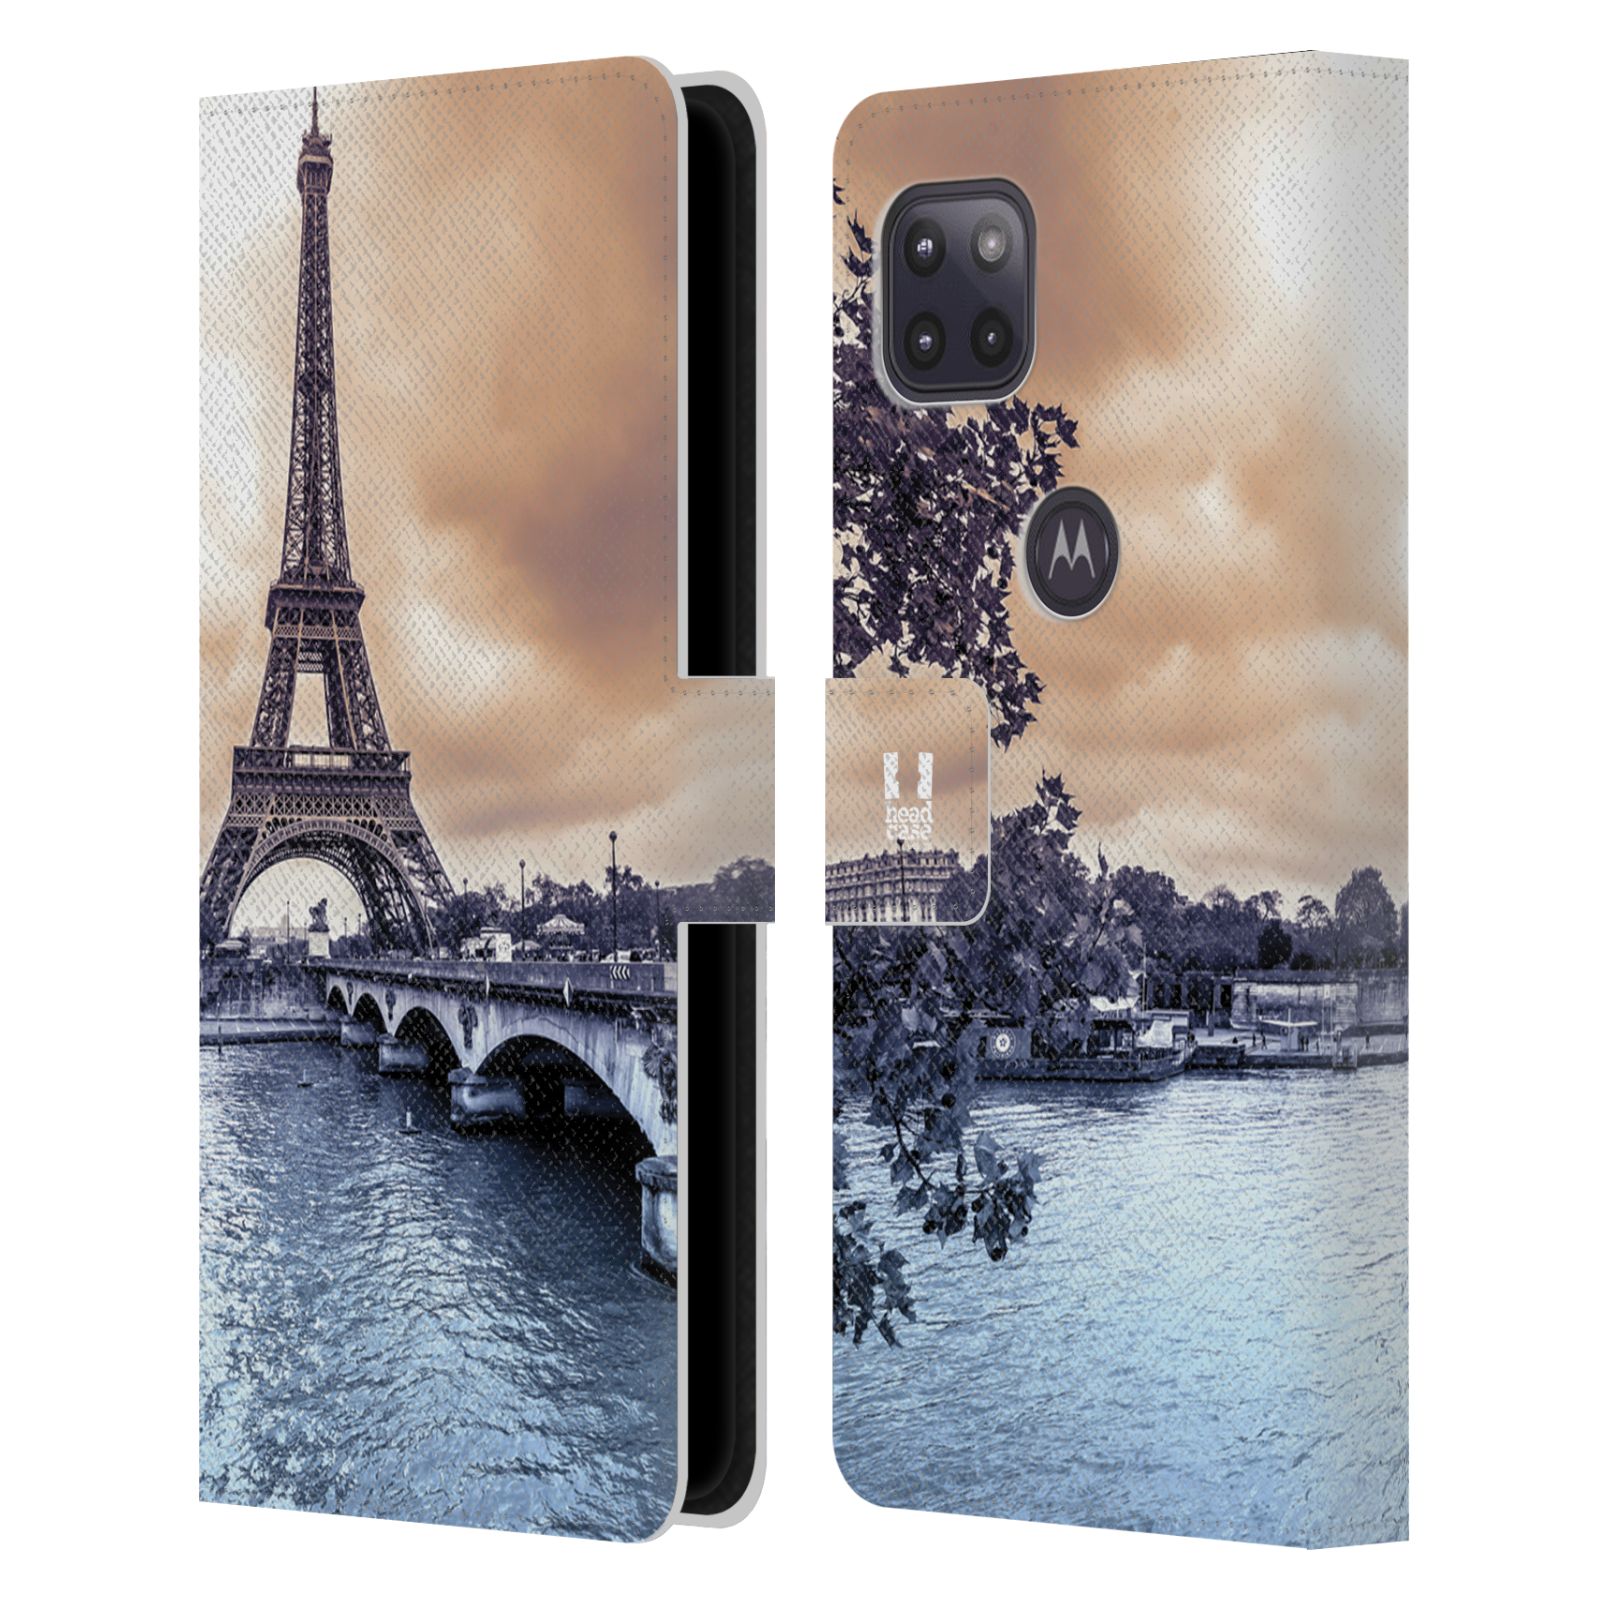 Pouzdro pro mobil Motorola Moto G 5G - HEAD CASE - Eiffelova věž Paříž - Francie